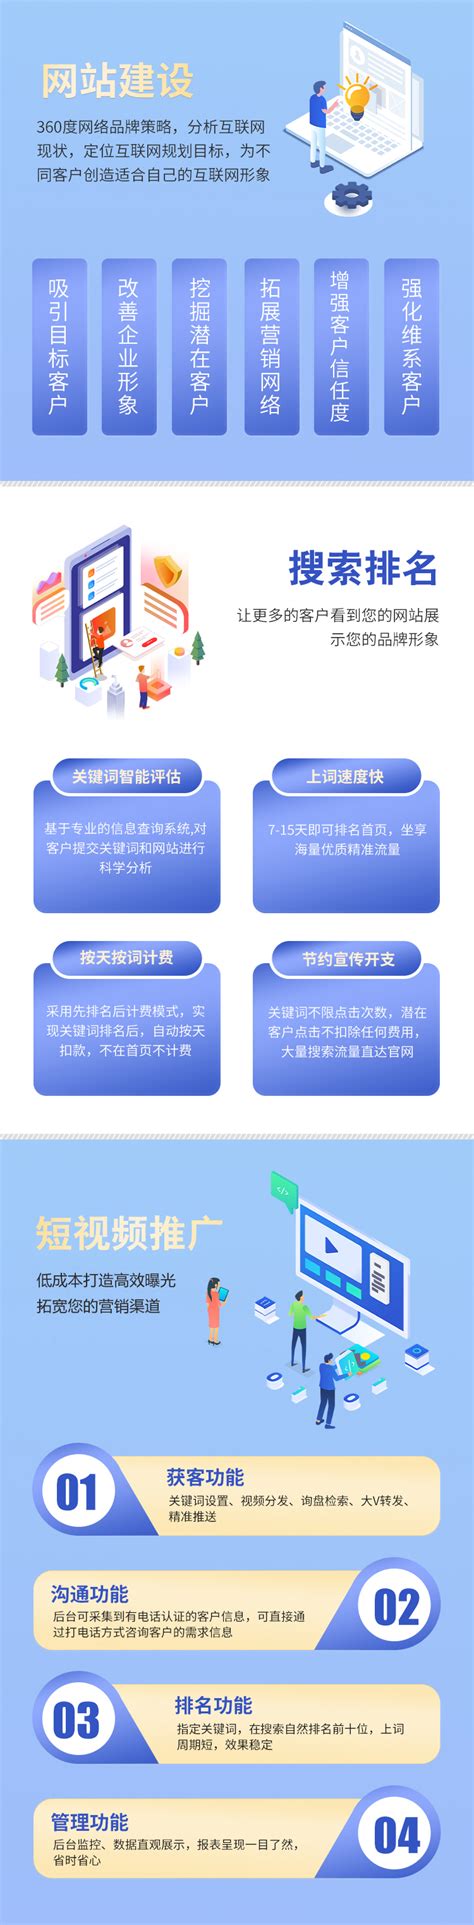 重庆网站建设与安全